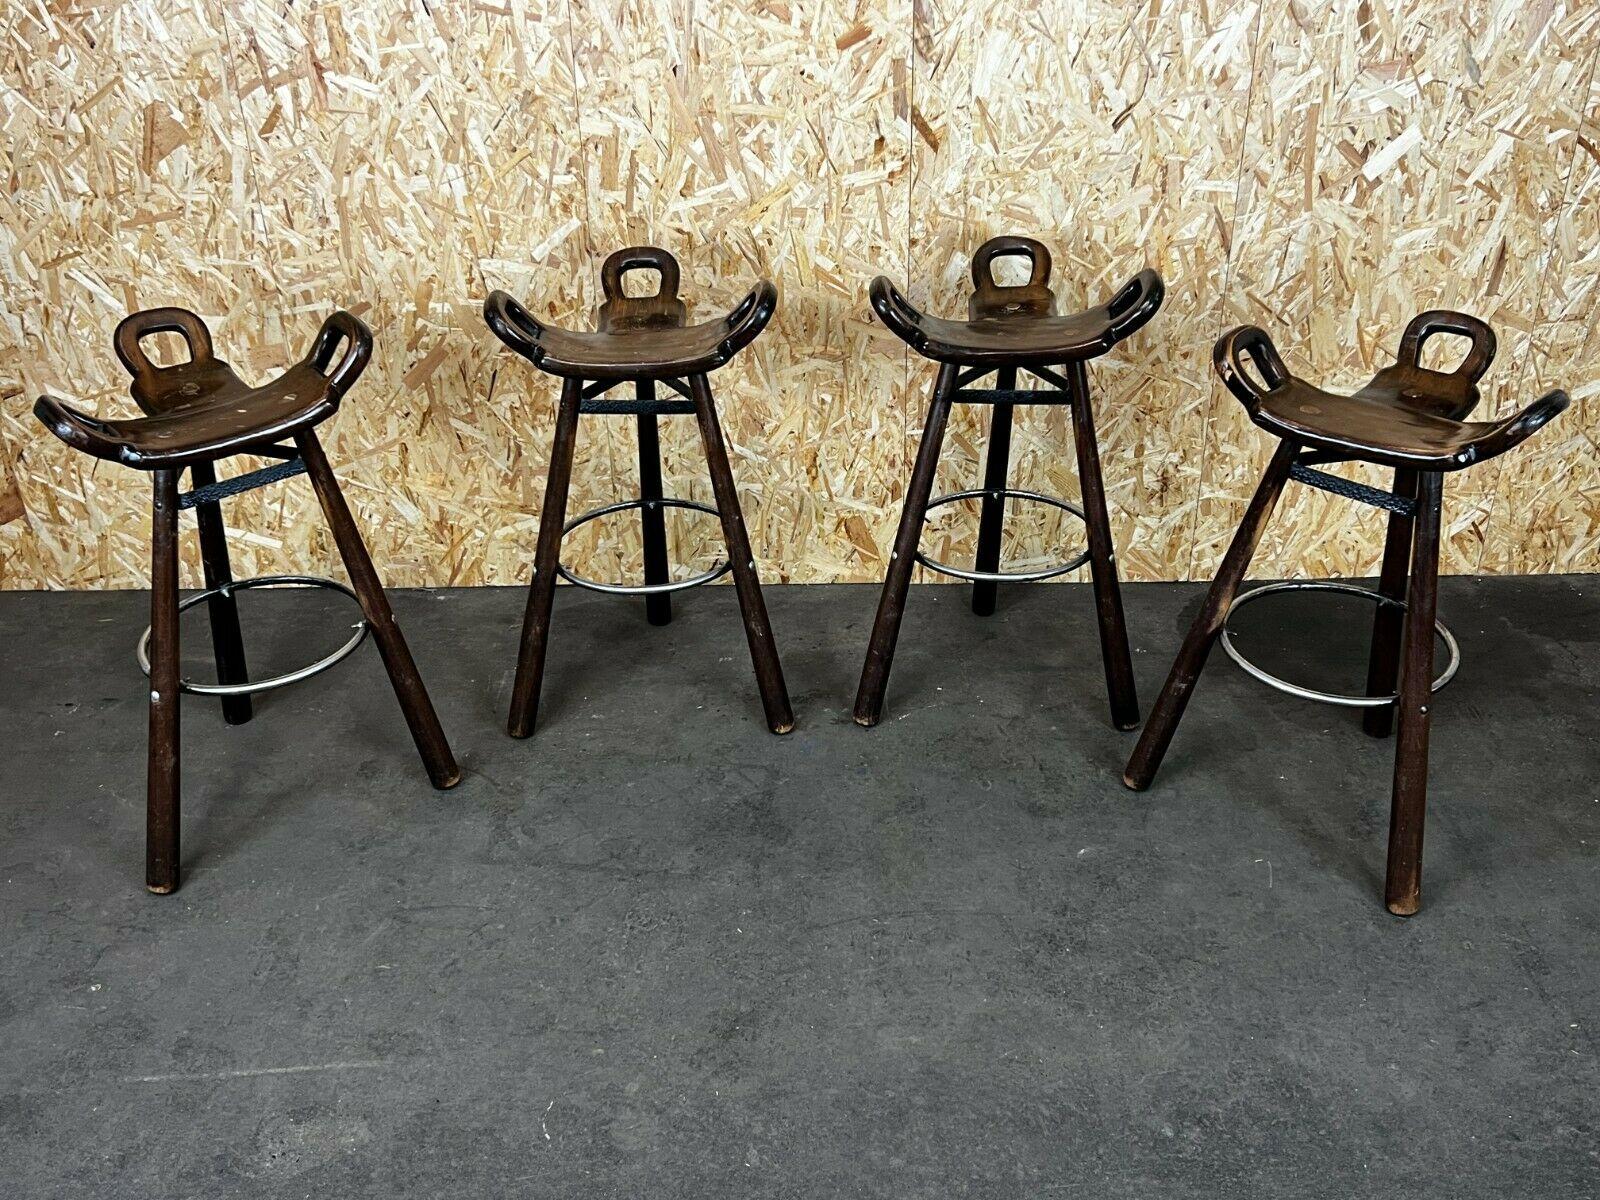 4x 50s 60s bar stools tabourets de bar attribués à Carl Malmsten Sweden Design

Objet : 4x tabourets de bar

Fabricant : Attribué à Carl Malmsten

Condition : Vintage

Âge : vers 1950-1960

Dimensions :

50cm x 46cm x 83.5cm
Hauteur